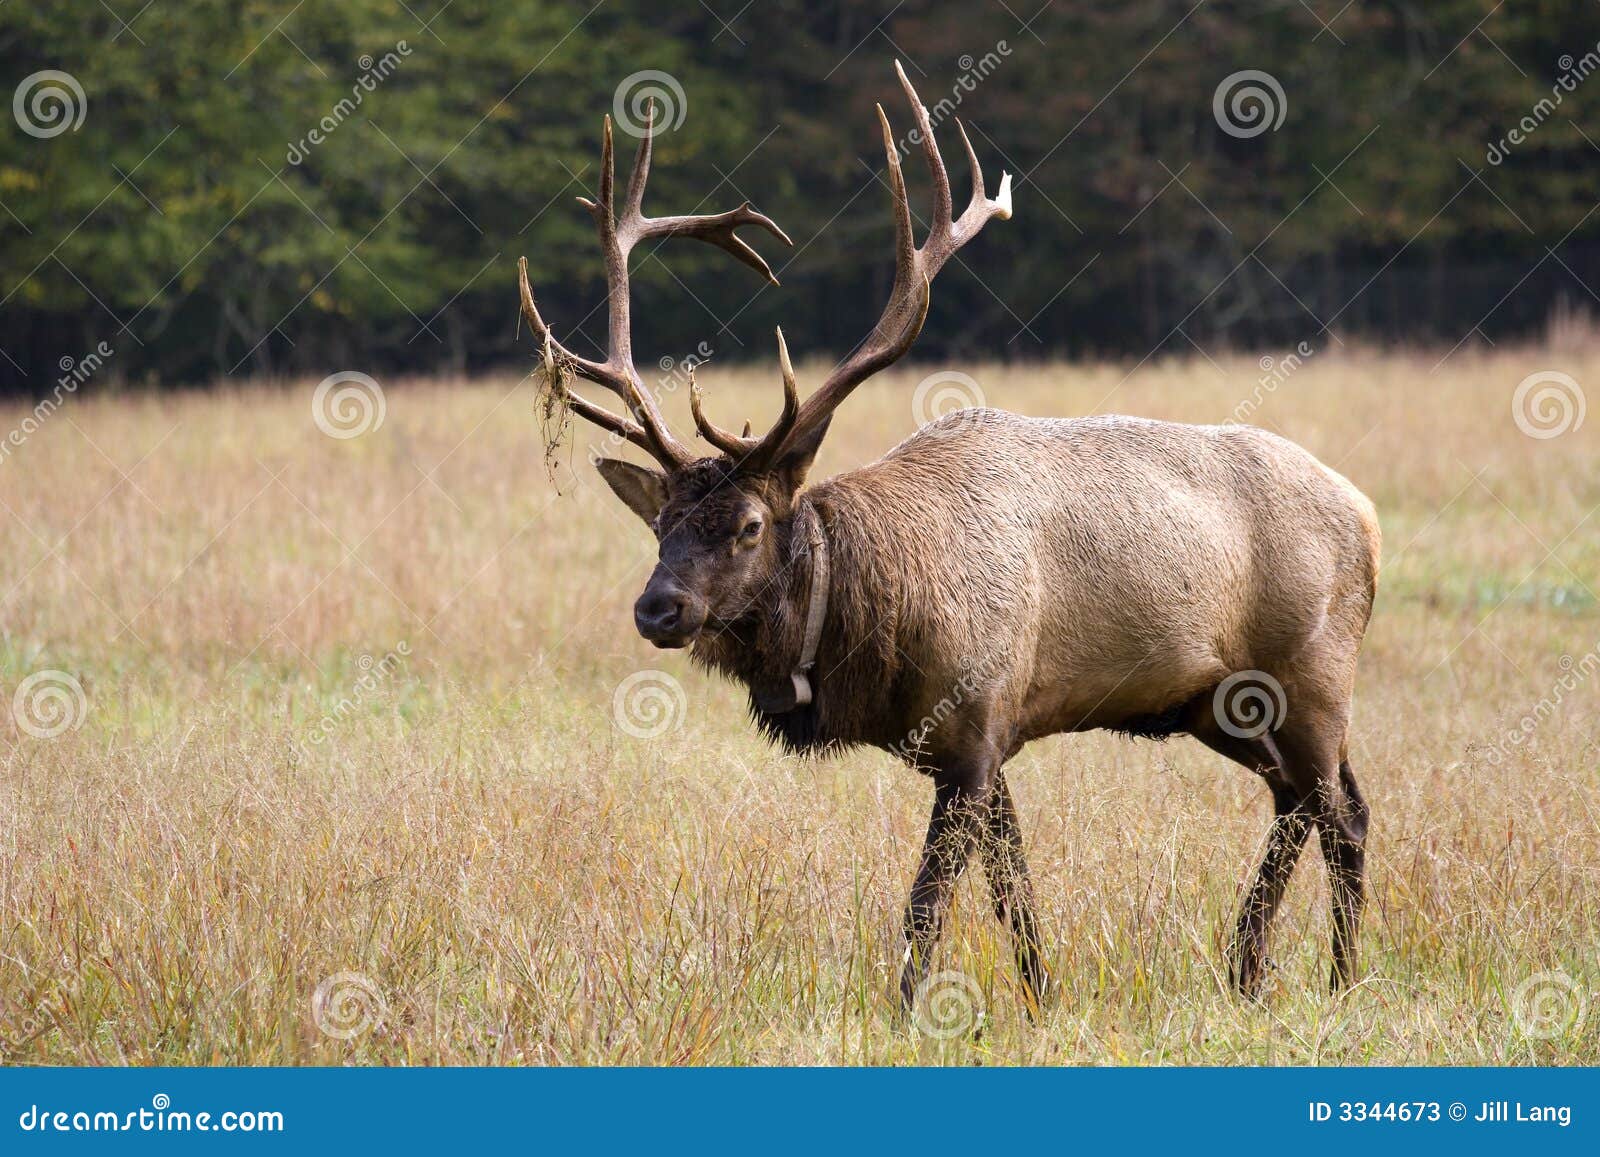 elk in the field